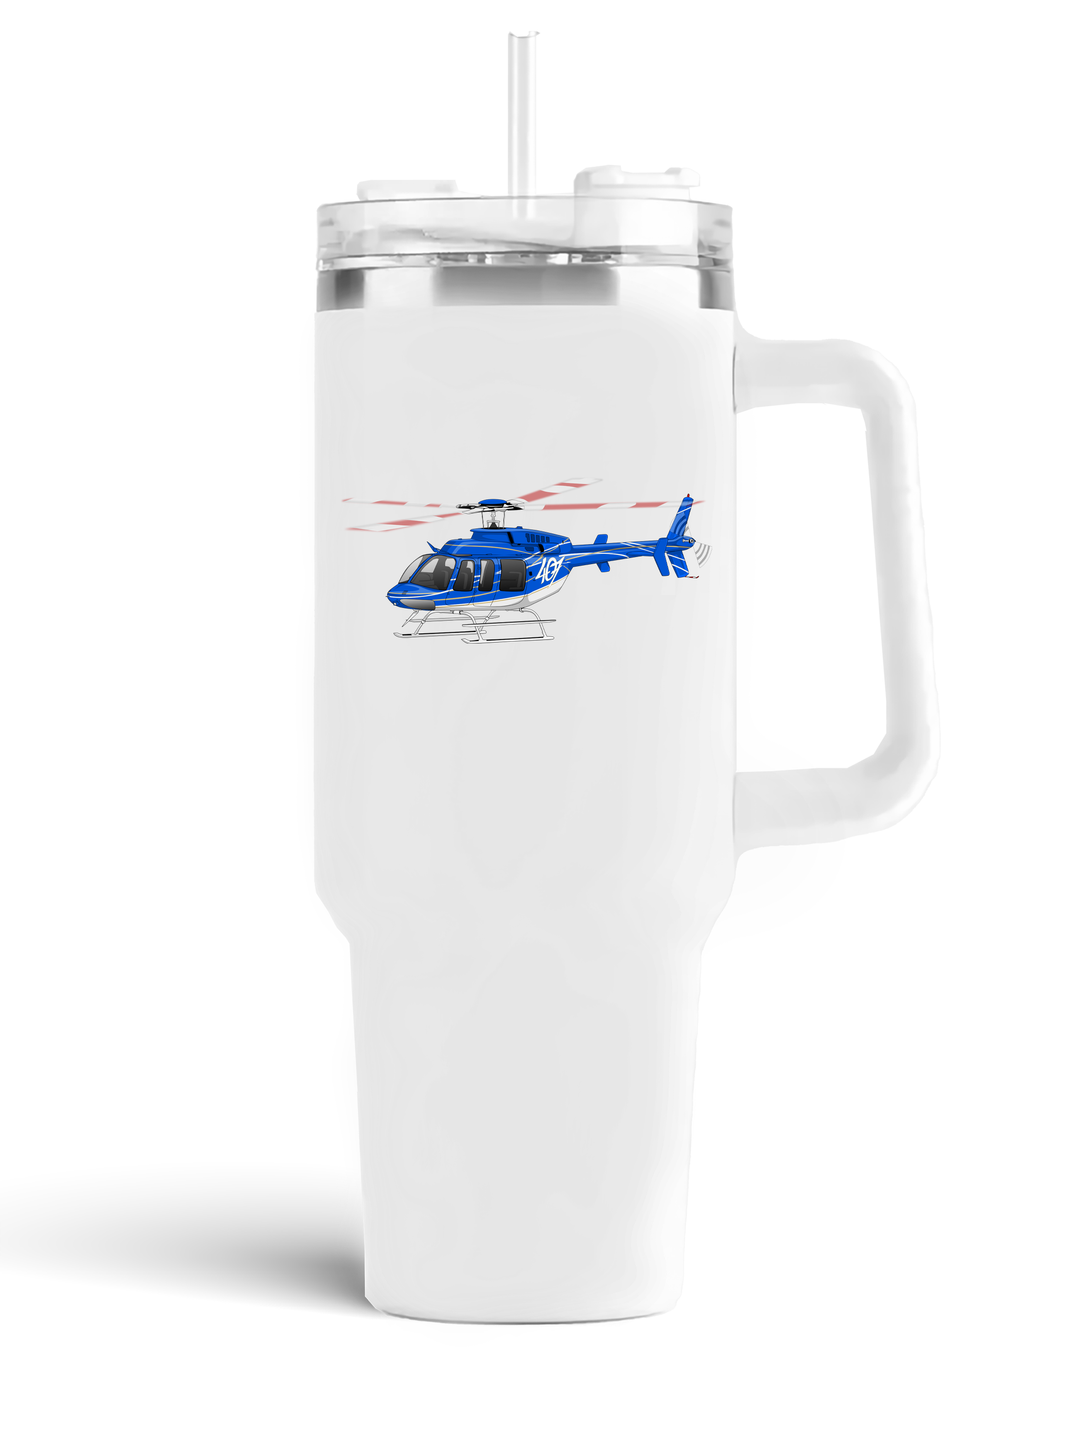 Bell 407GXi quencher